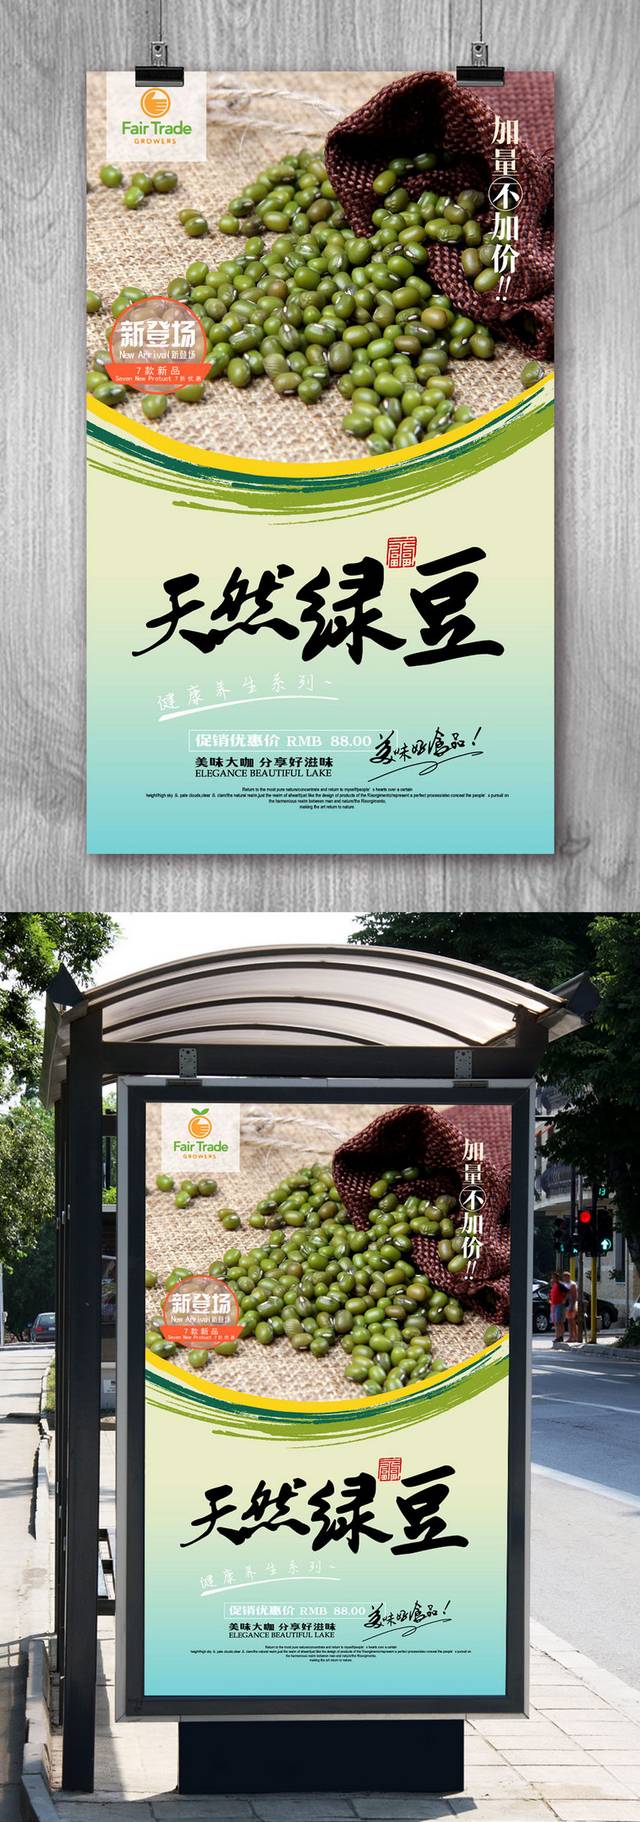 高清绿豆宣传海报设计模板